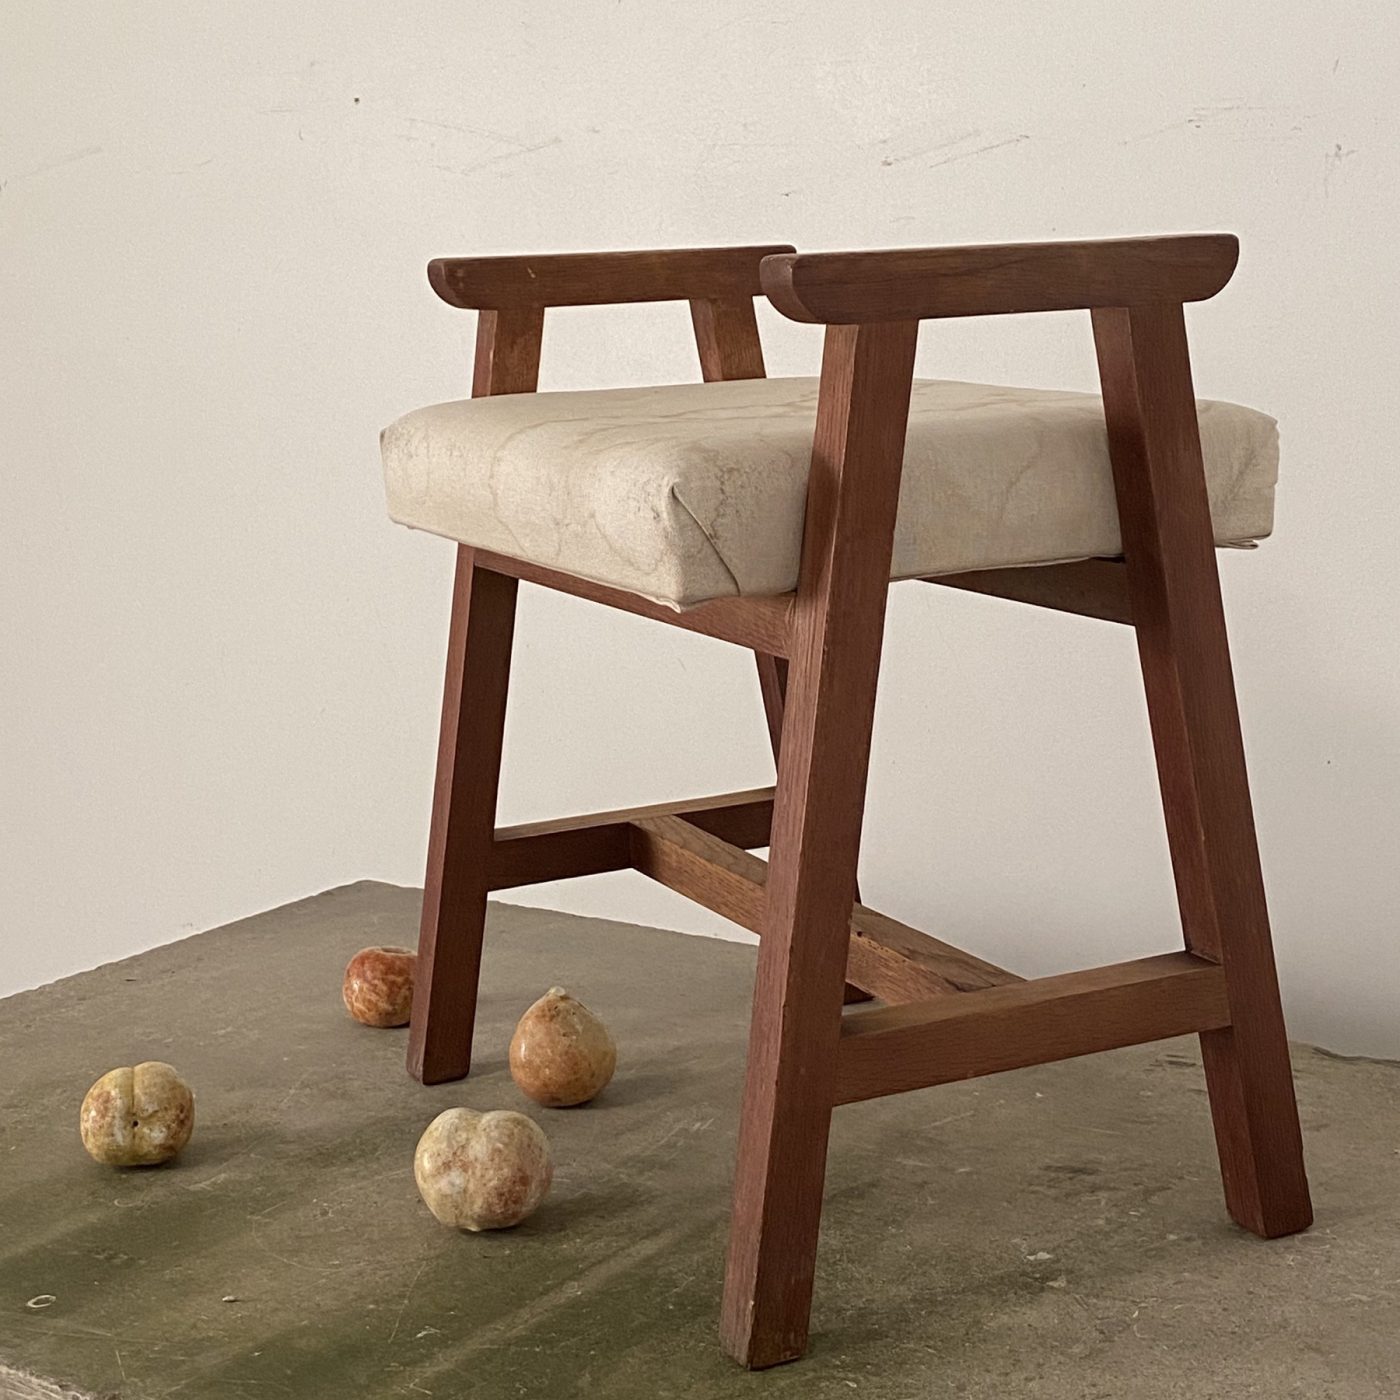 objet-vagabond-midcentury-stool0002